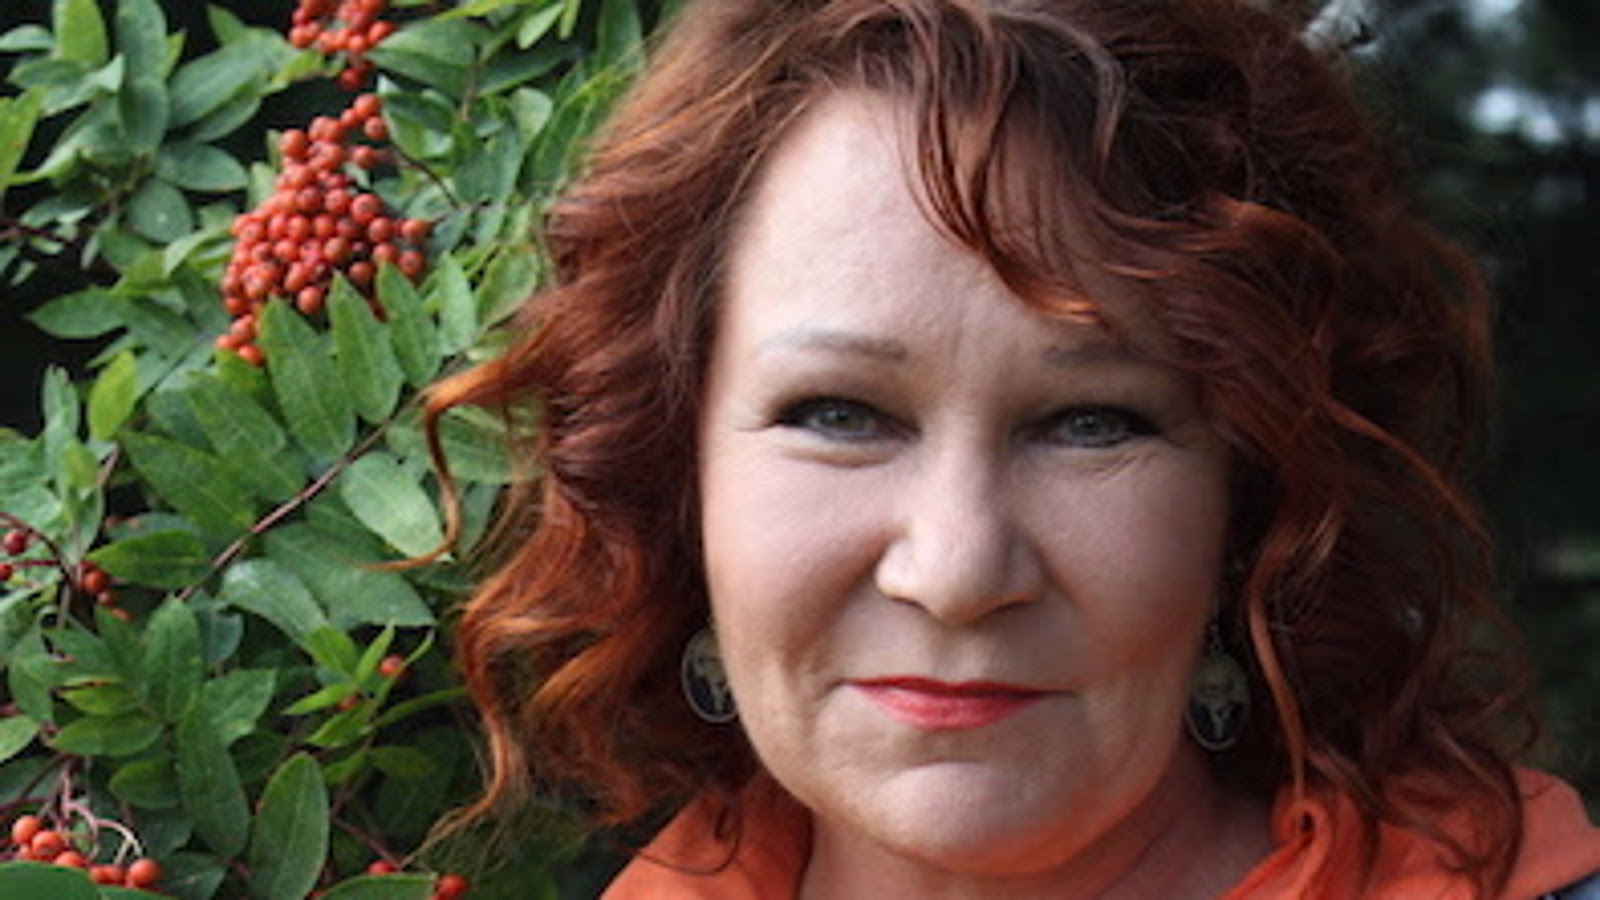 Kuva on Vicky Rostista, jolla on punaiset hiukset. Taustalla vasemmalla on vihreitä pihlajan lehtiä ja oransseja pihlajanmarjoja.  Kuva on kasvokuva. 